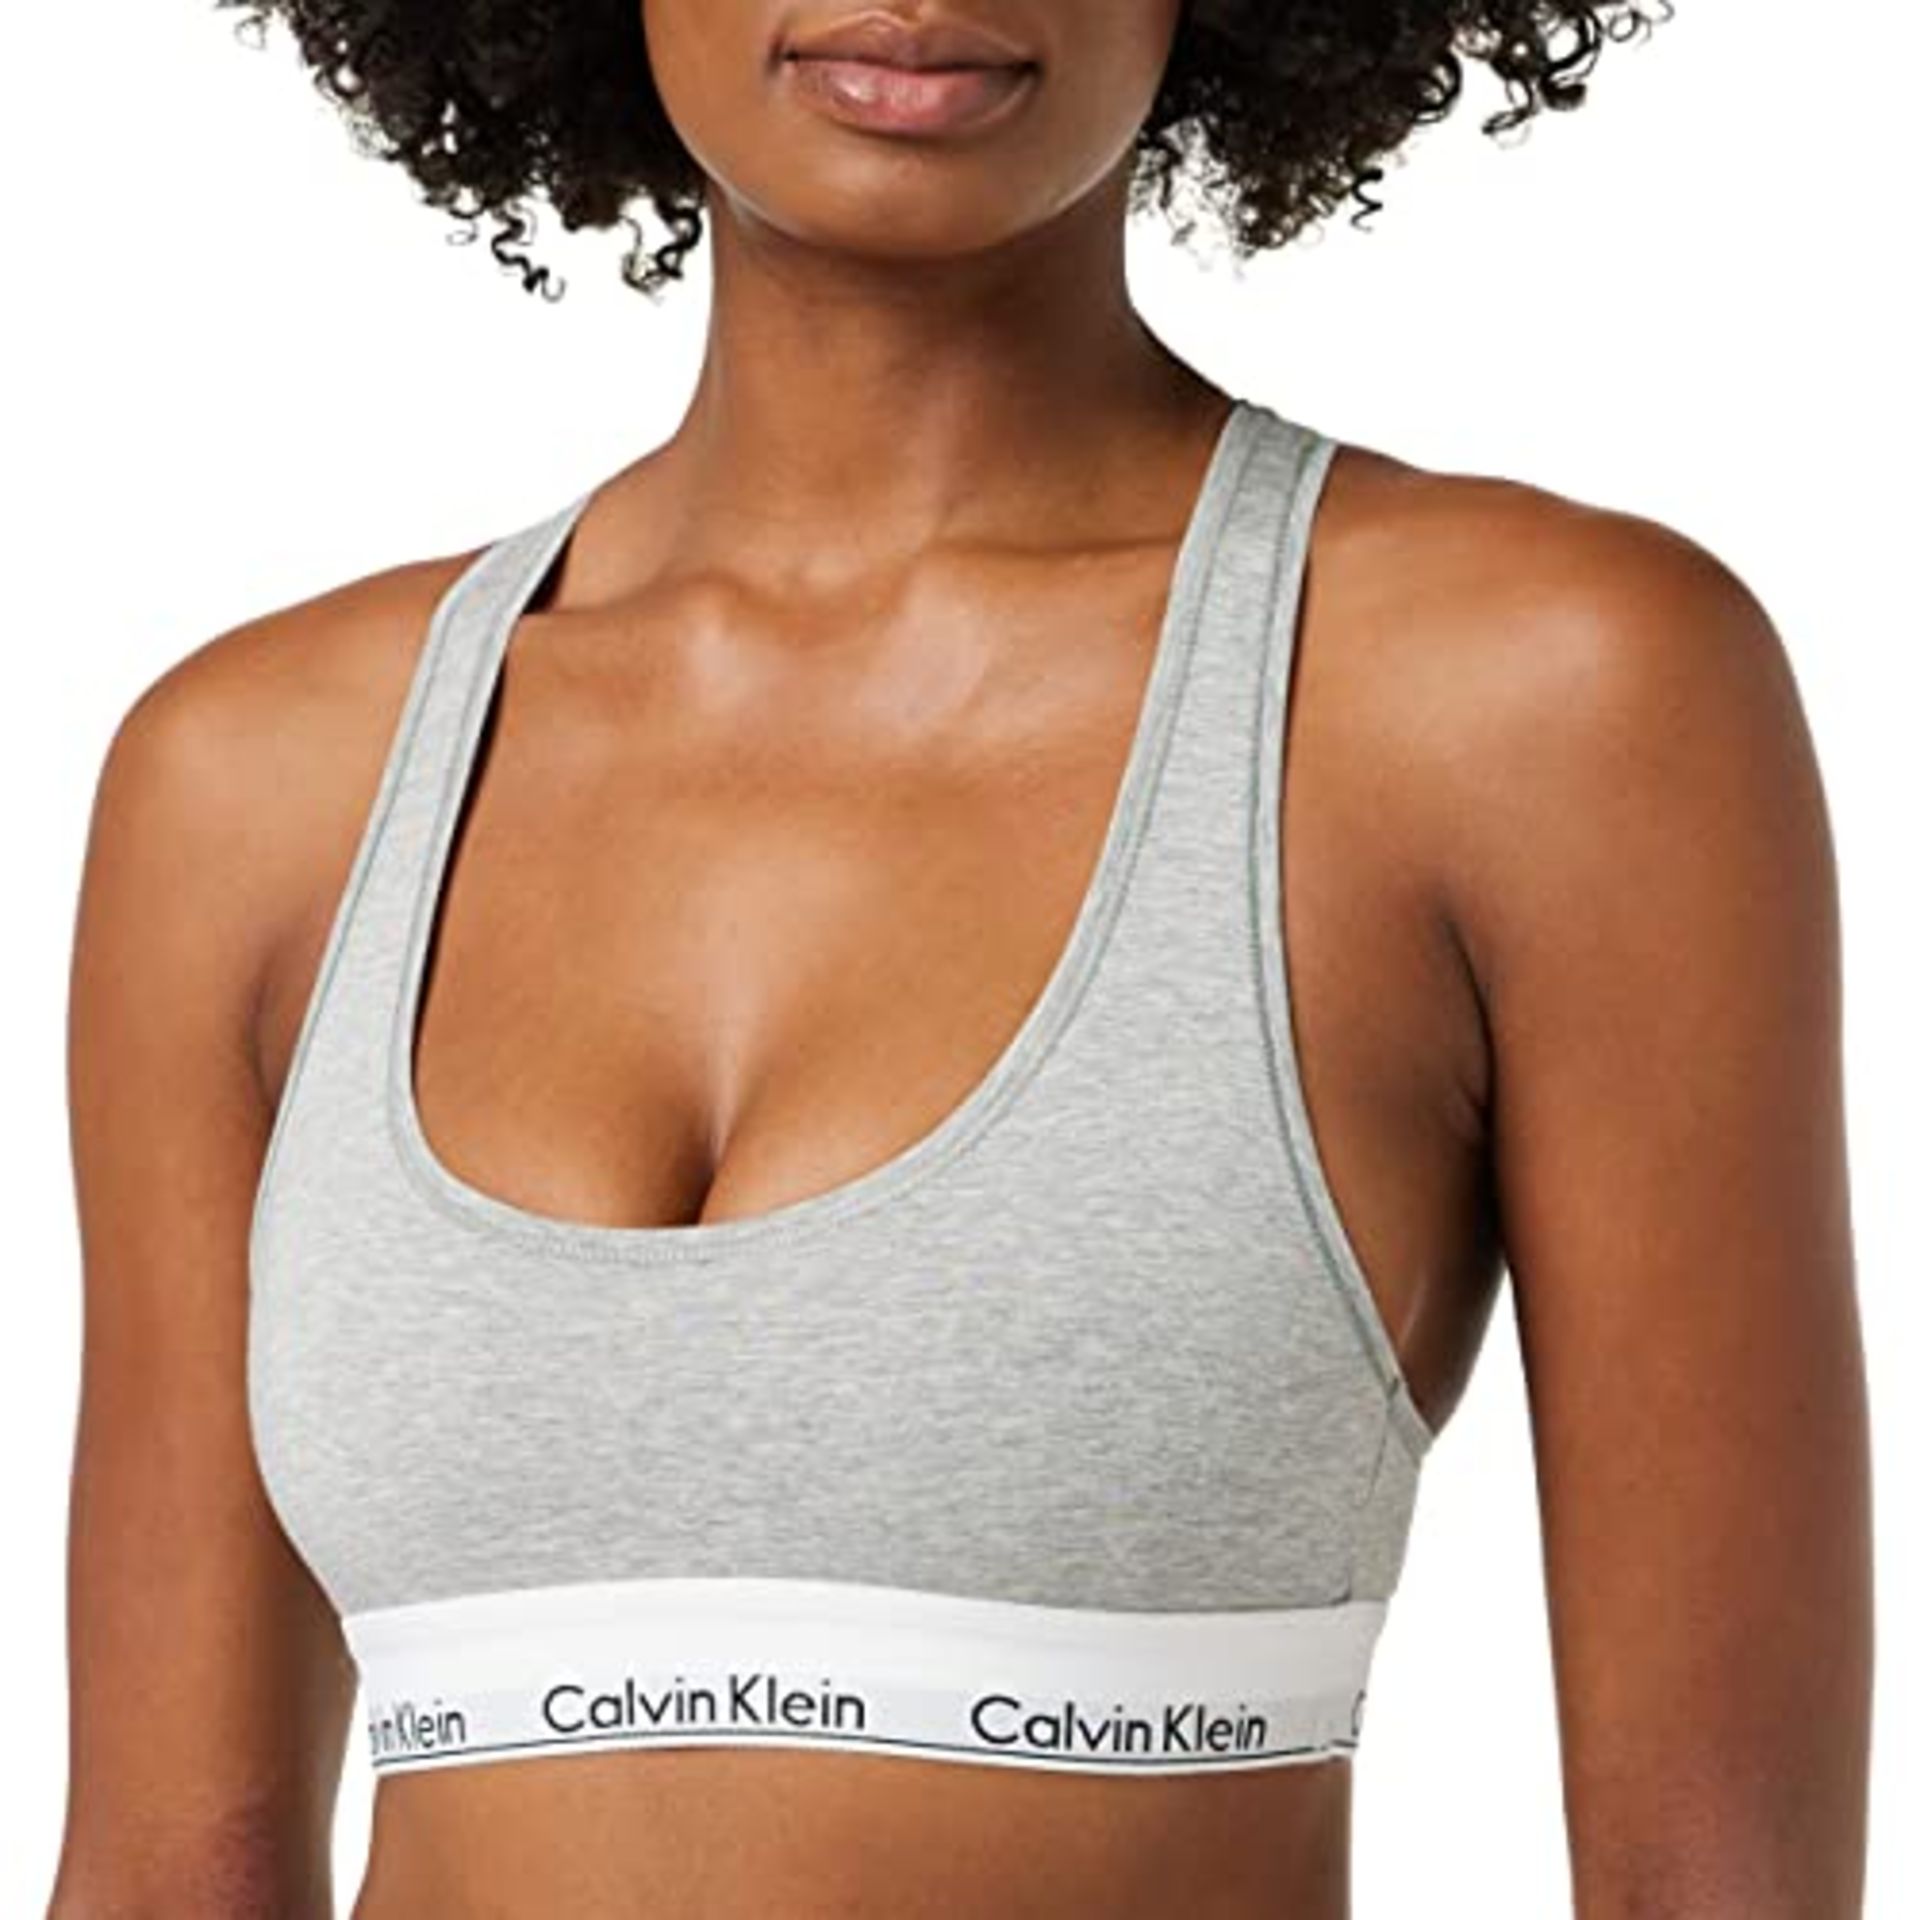 Calvin Klein Women's Bralette Bra without underwire with stretch, Grey (Grey Heather),